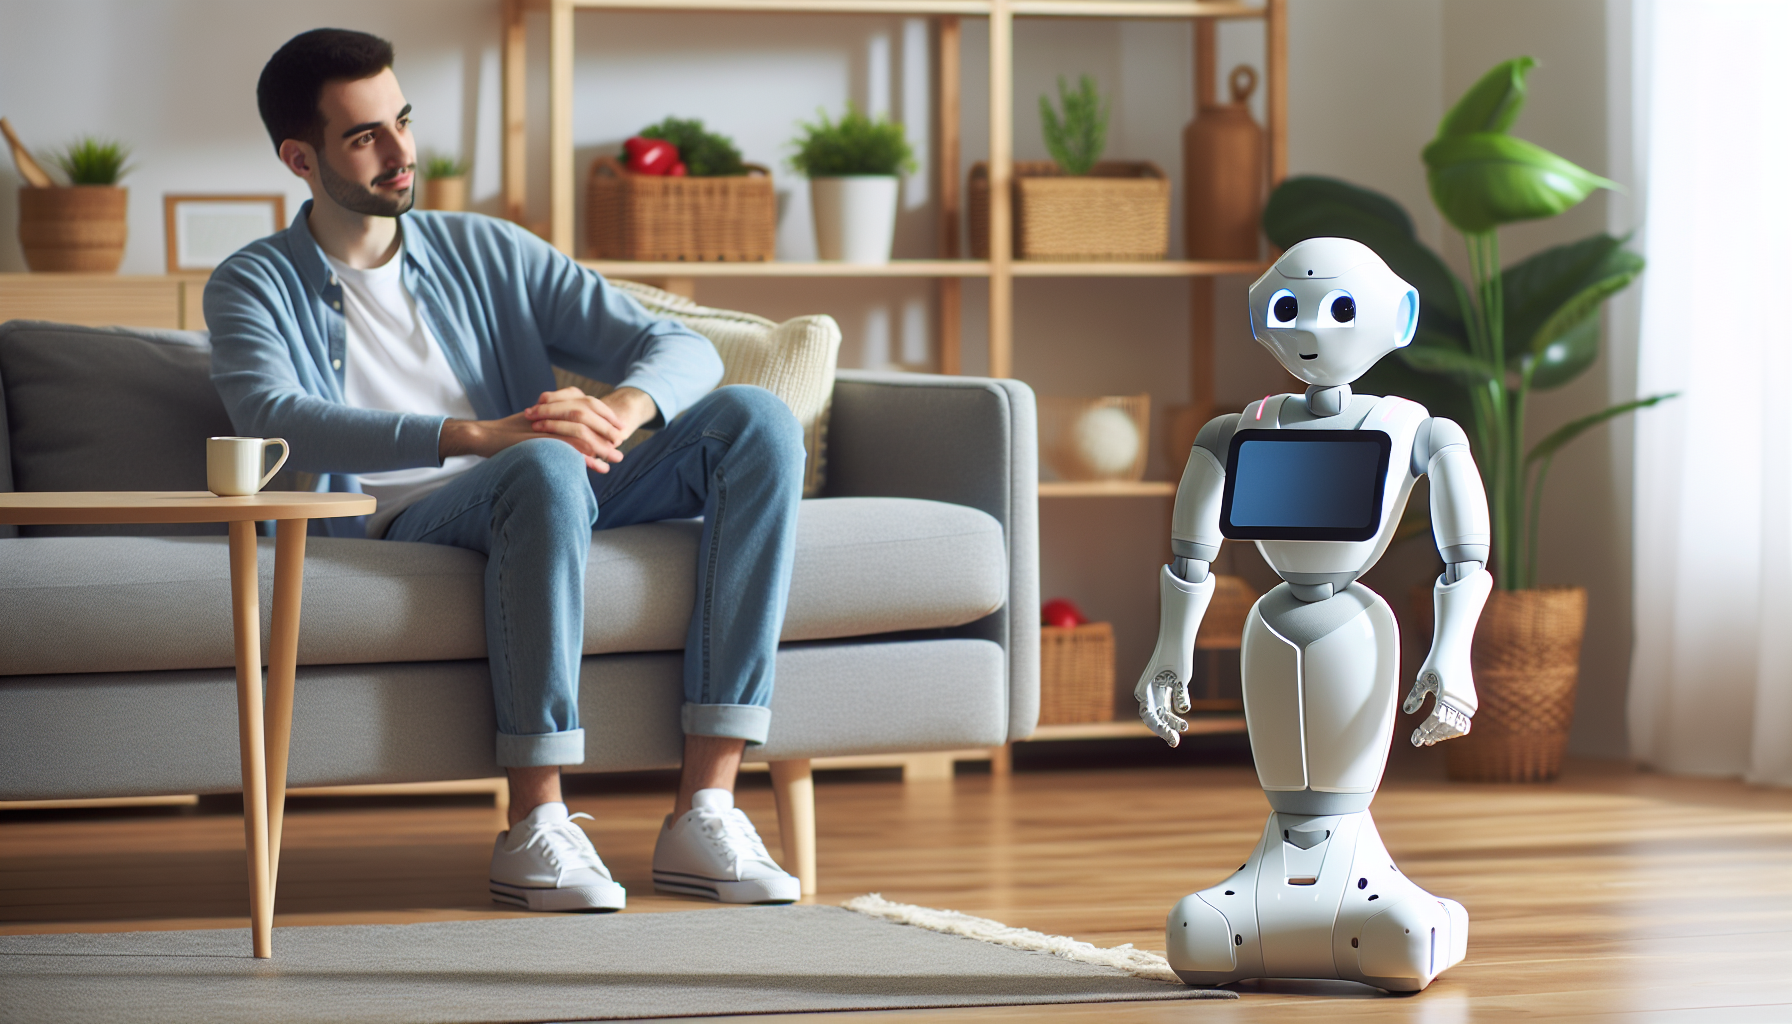 découvrez tout sur pepper, le robot social de softbank - ses fonctionnalités, son utilisation et son impact sur la société.